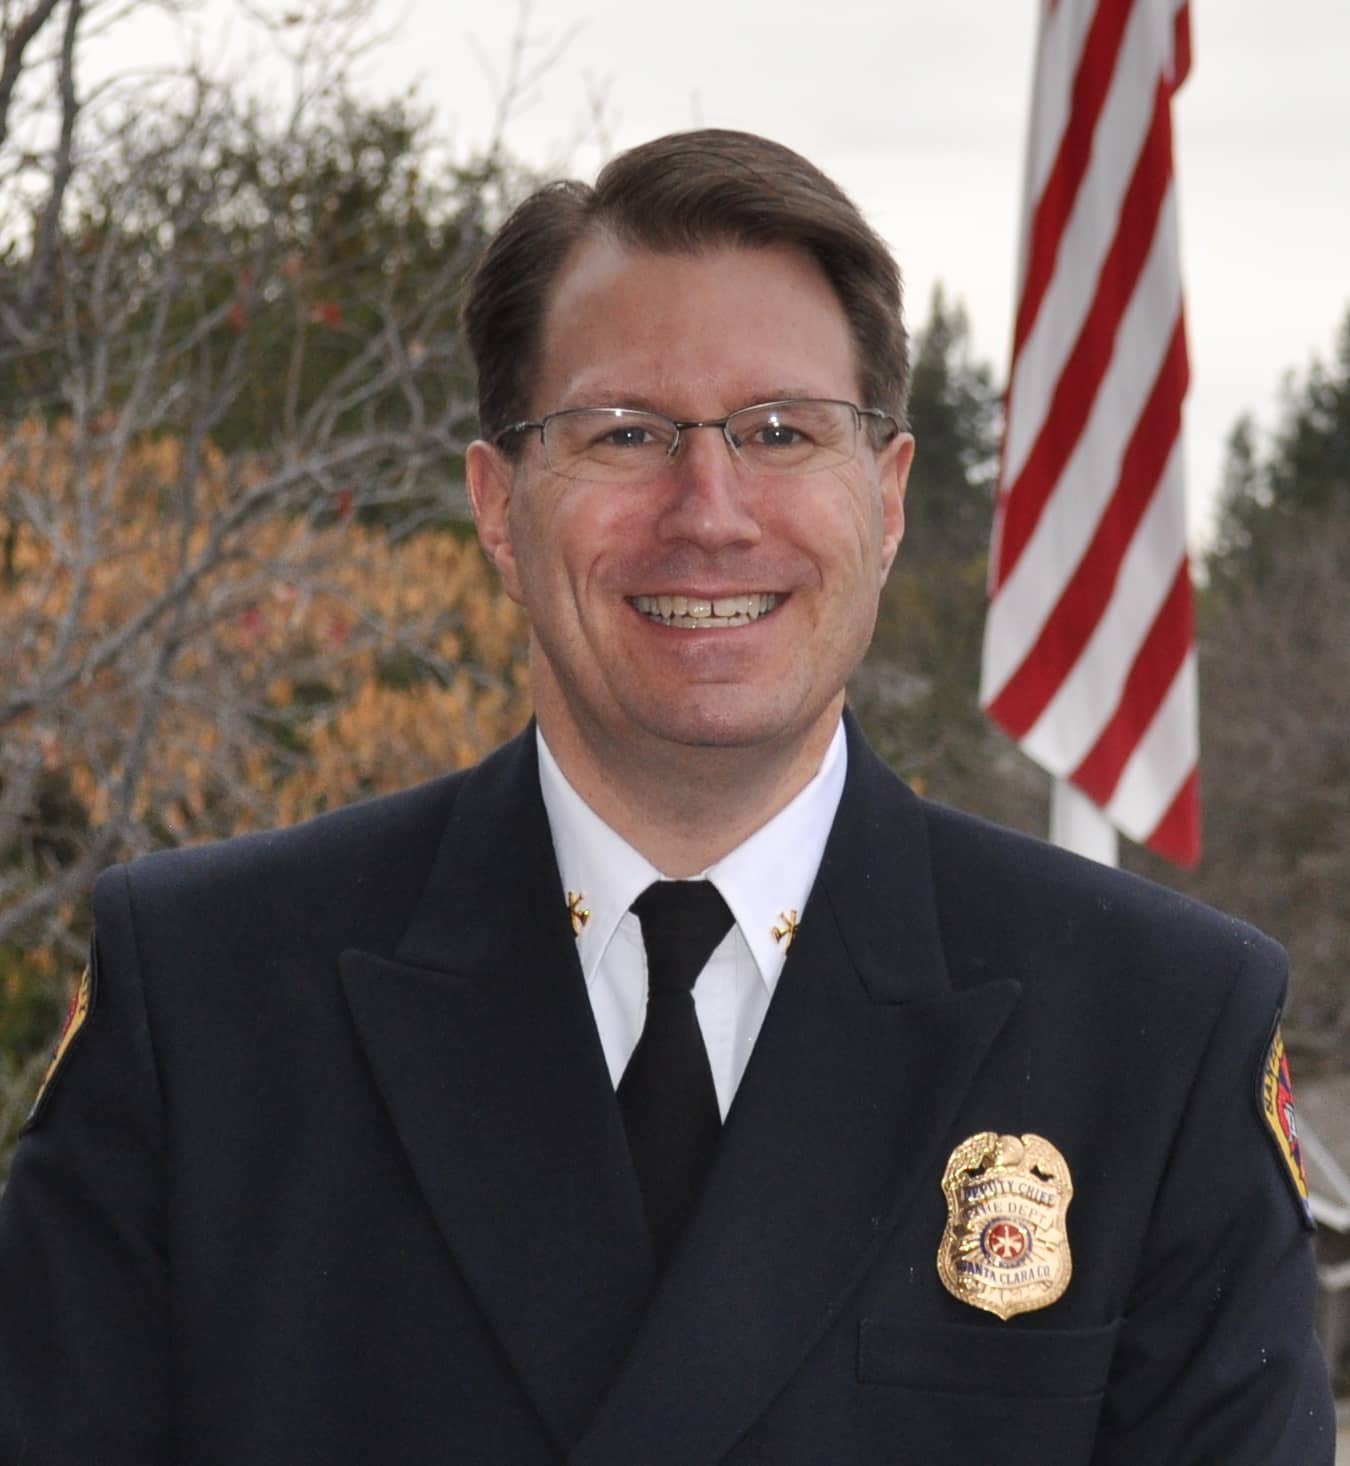 Deputy Chief Steve Prziborowski